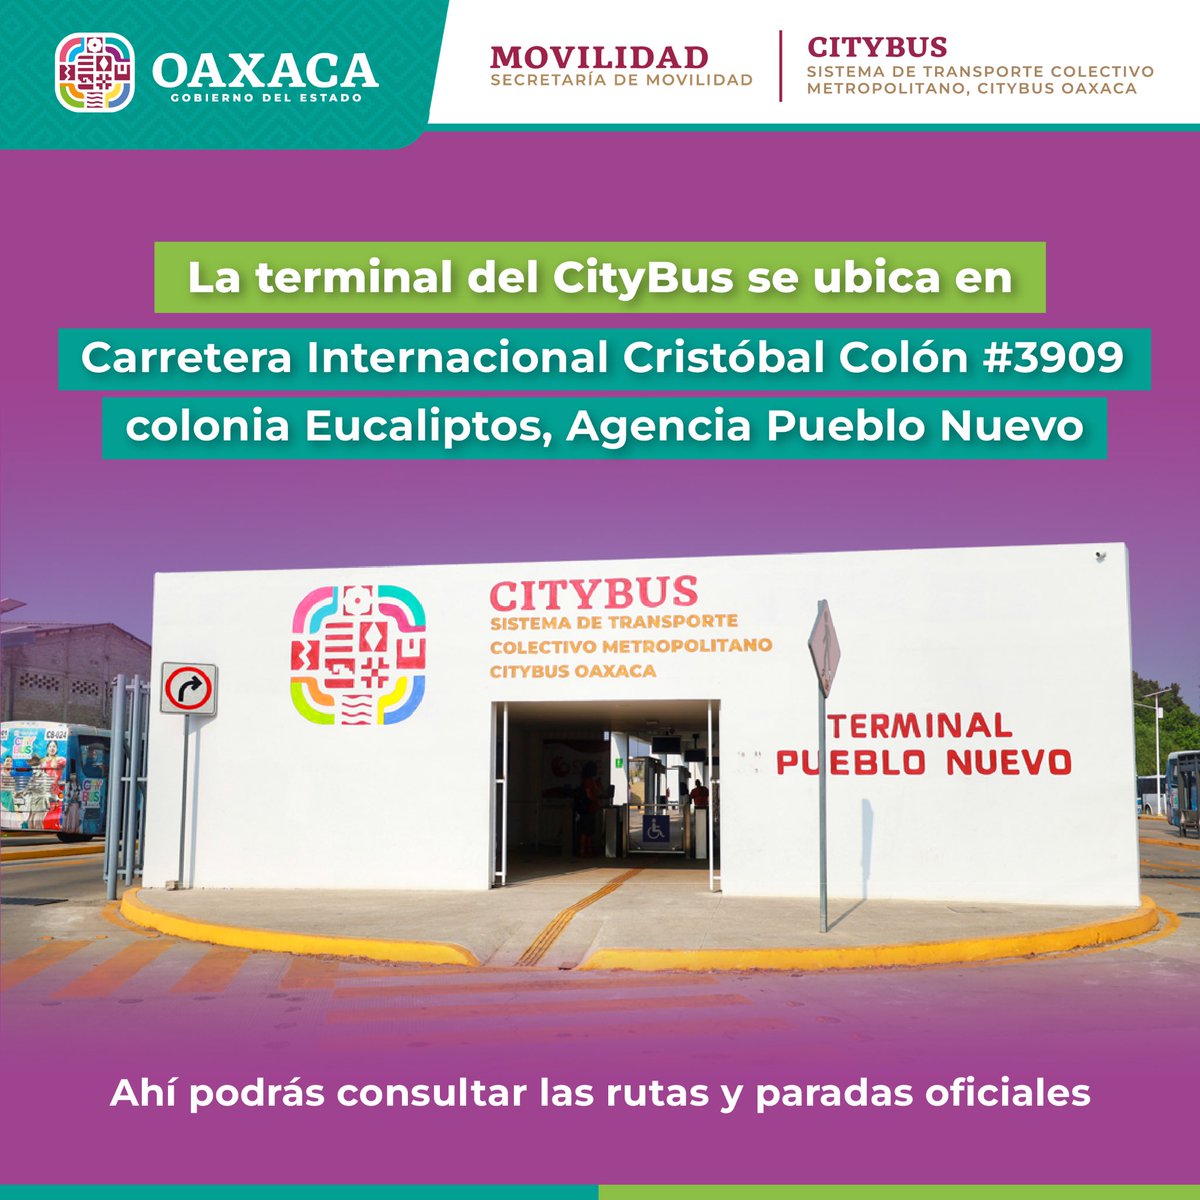 Esta es la ubicación de la terminal del @Citybus_GobOax, donde además puedes consultar nuestras rutas y paradas oficiales. #ViajaConNosotros